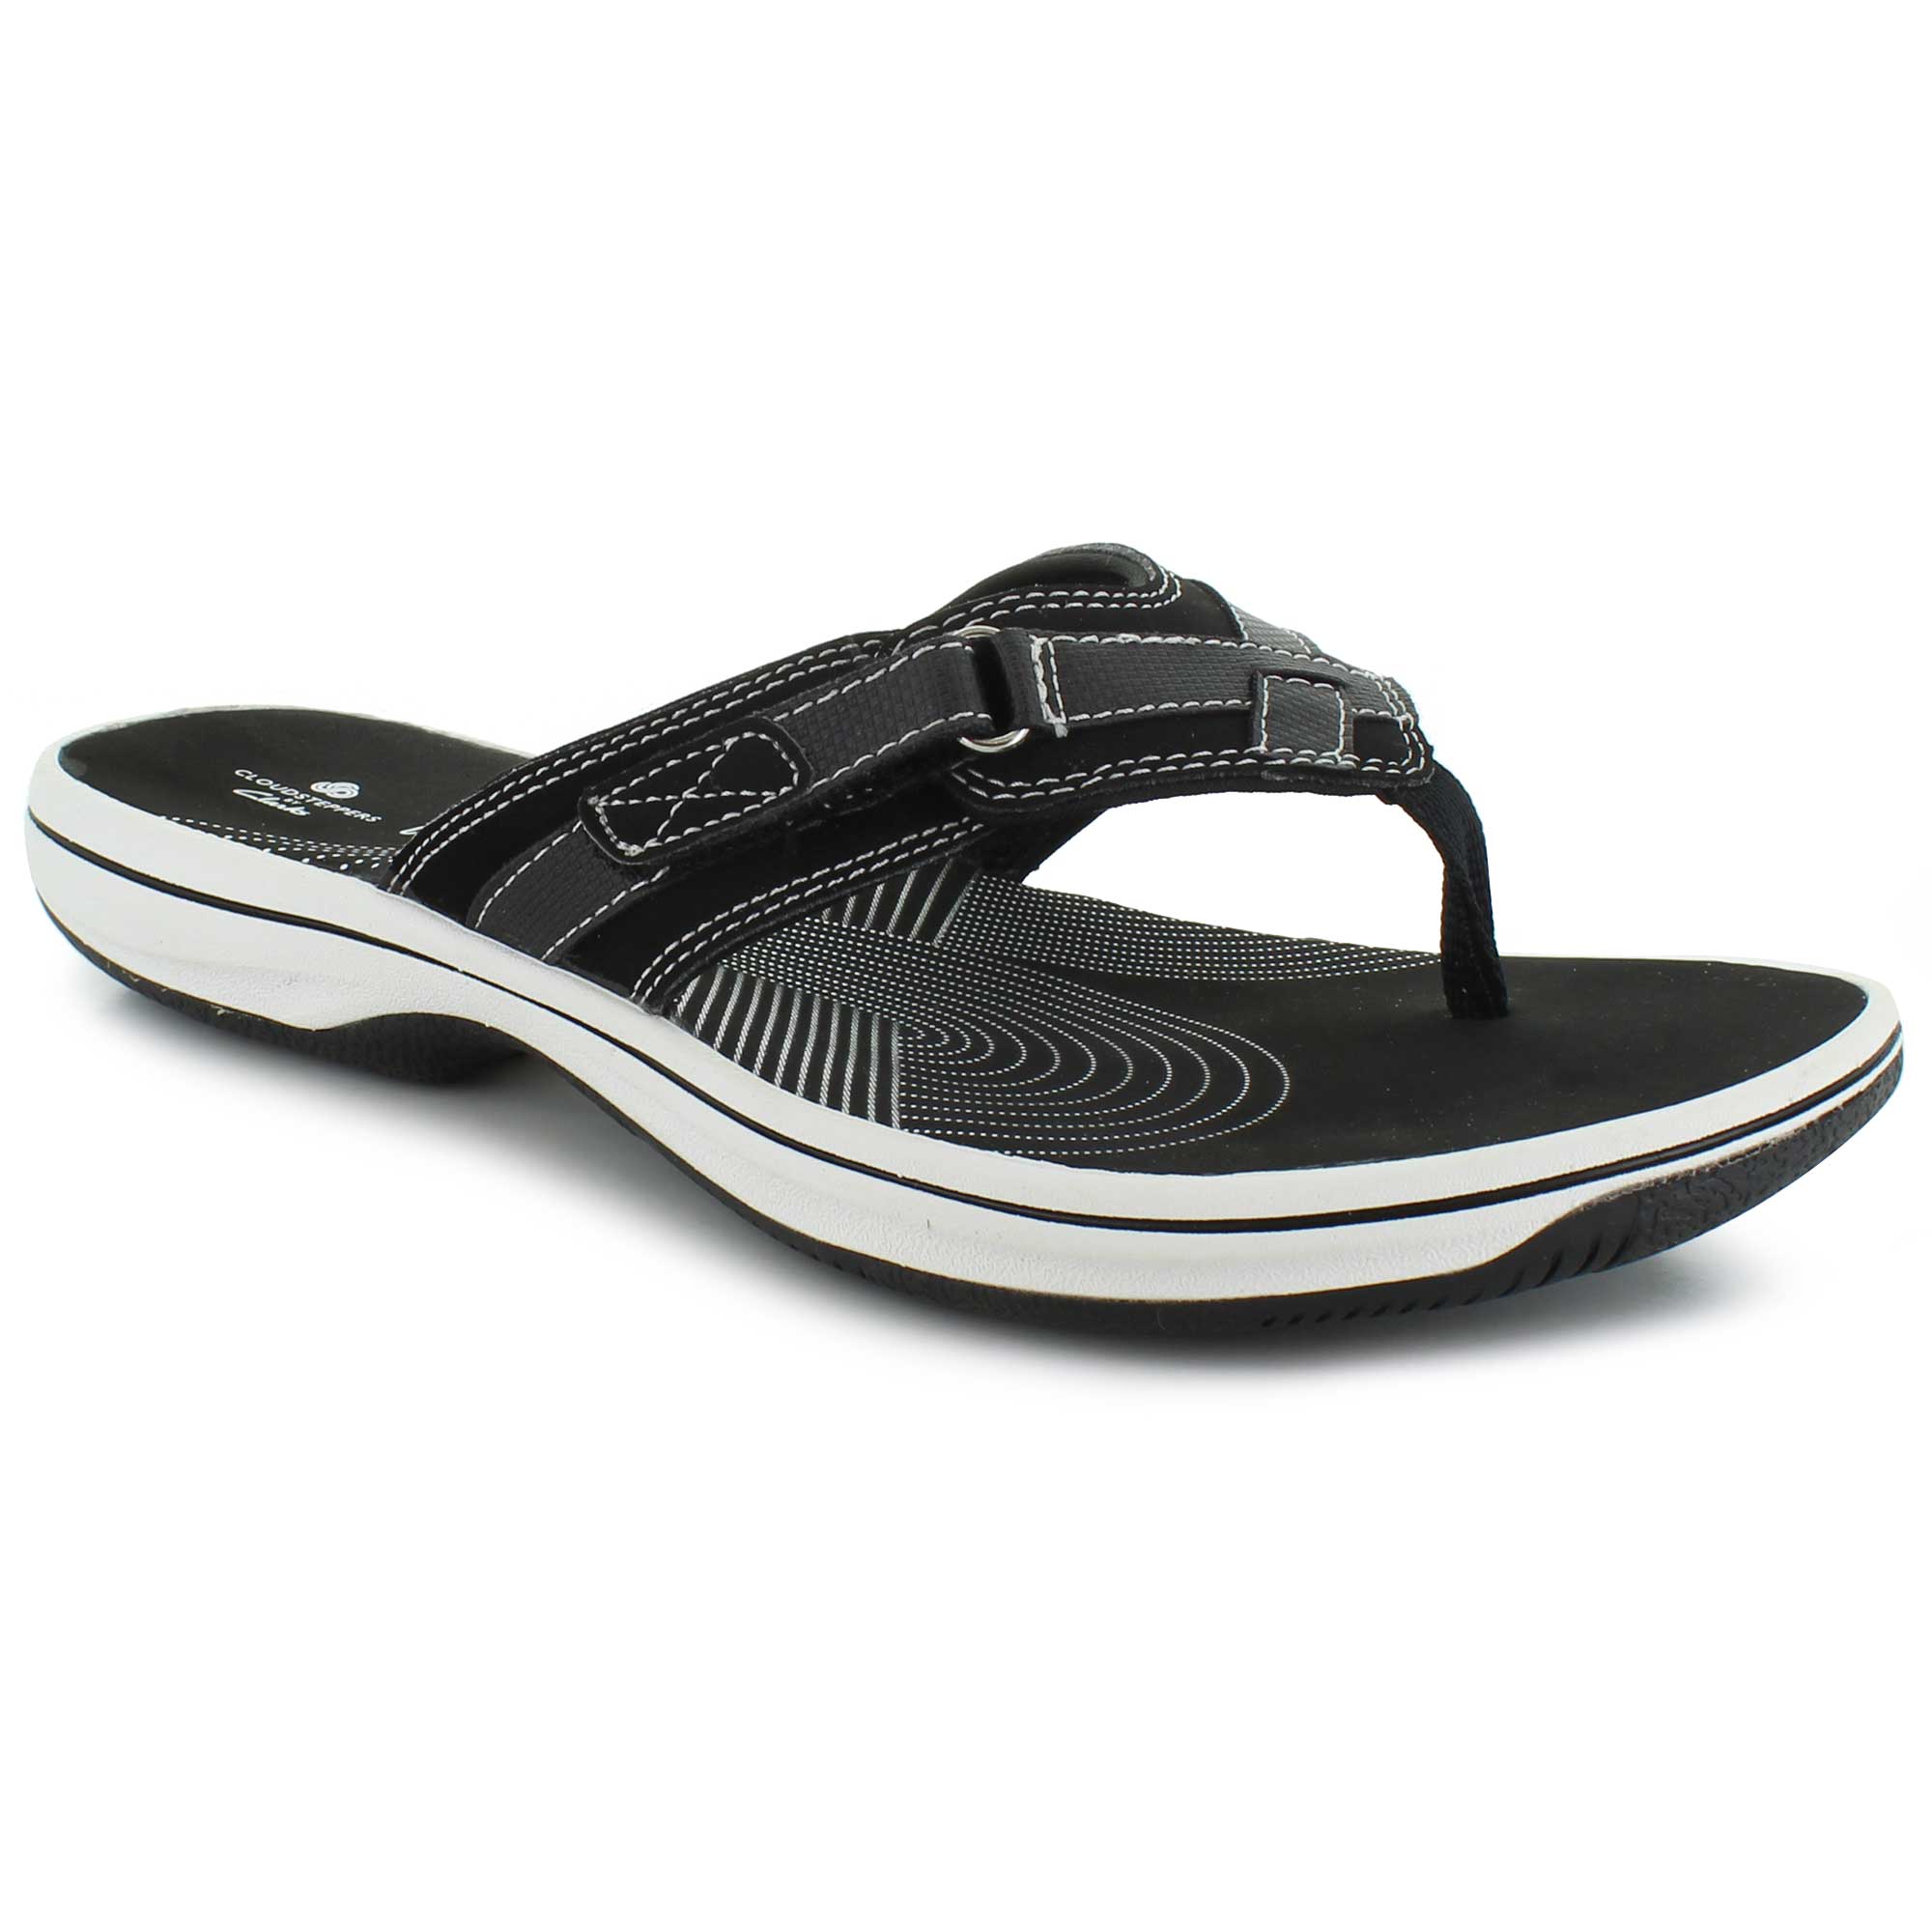 Women's Comfort Sandals | Shop Now at SHOE SHOW MEGA